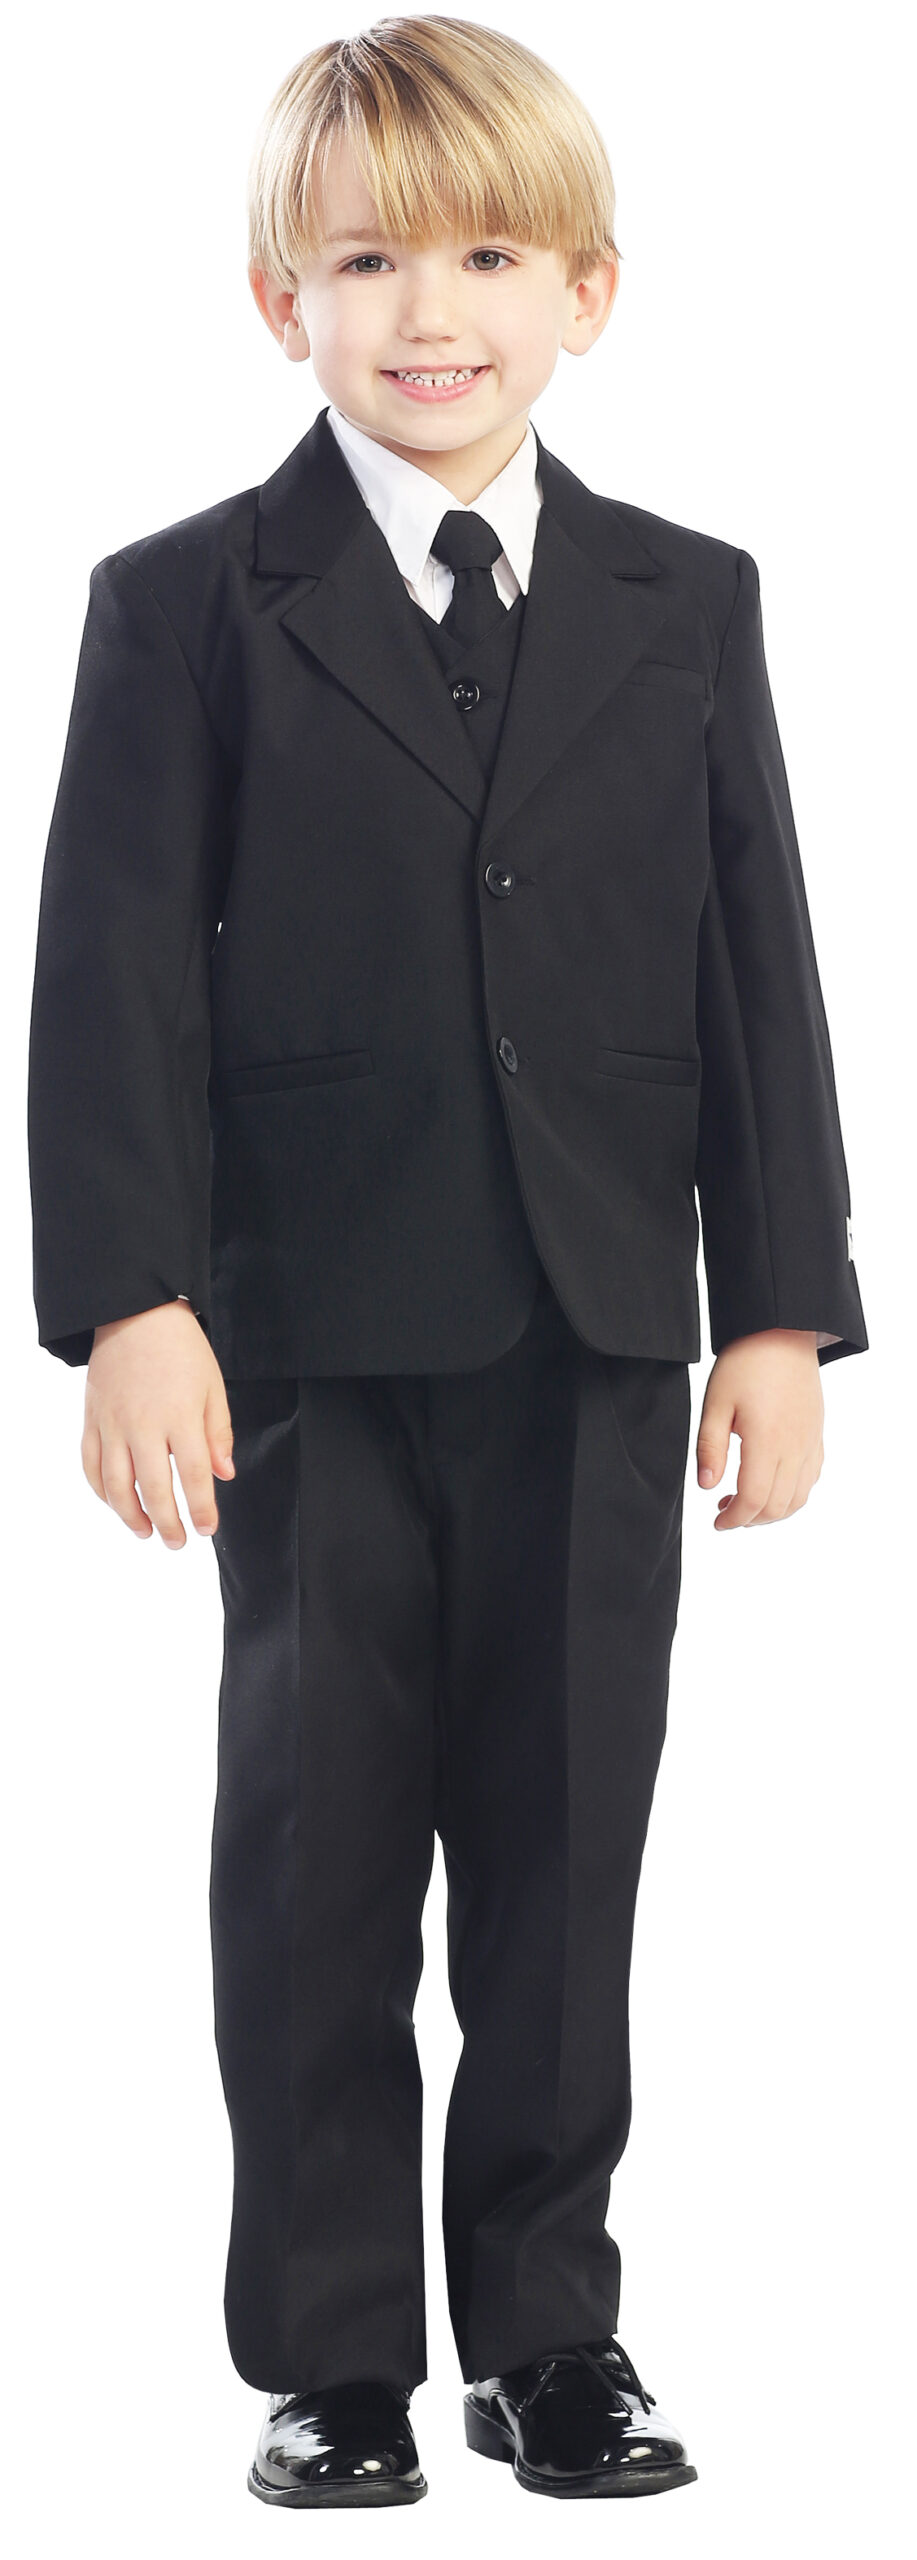 Avery Hill 5-Piece Boy's 2-Button Dress Suit Full-Back Vest - Black L (12 - 18 Months)